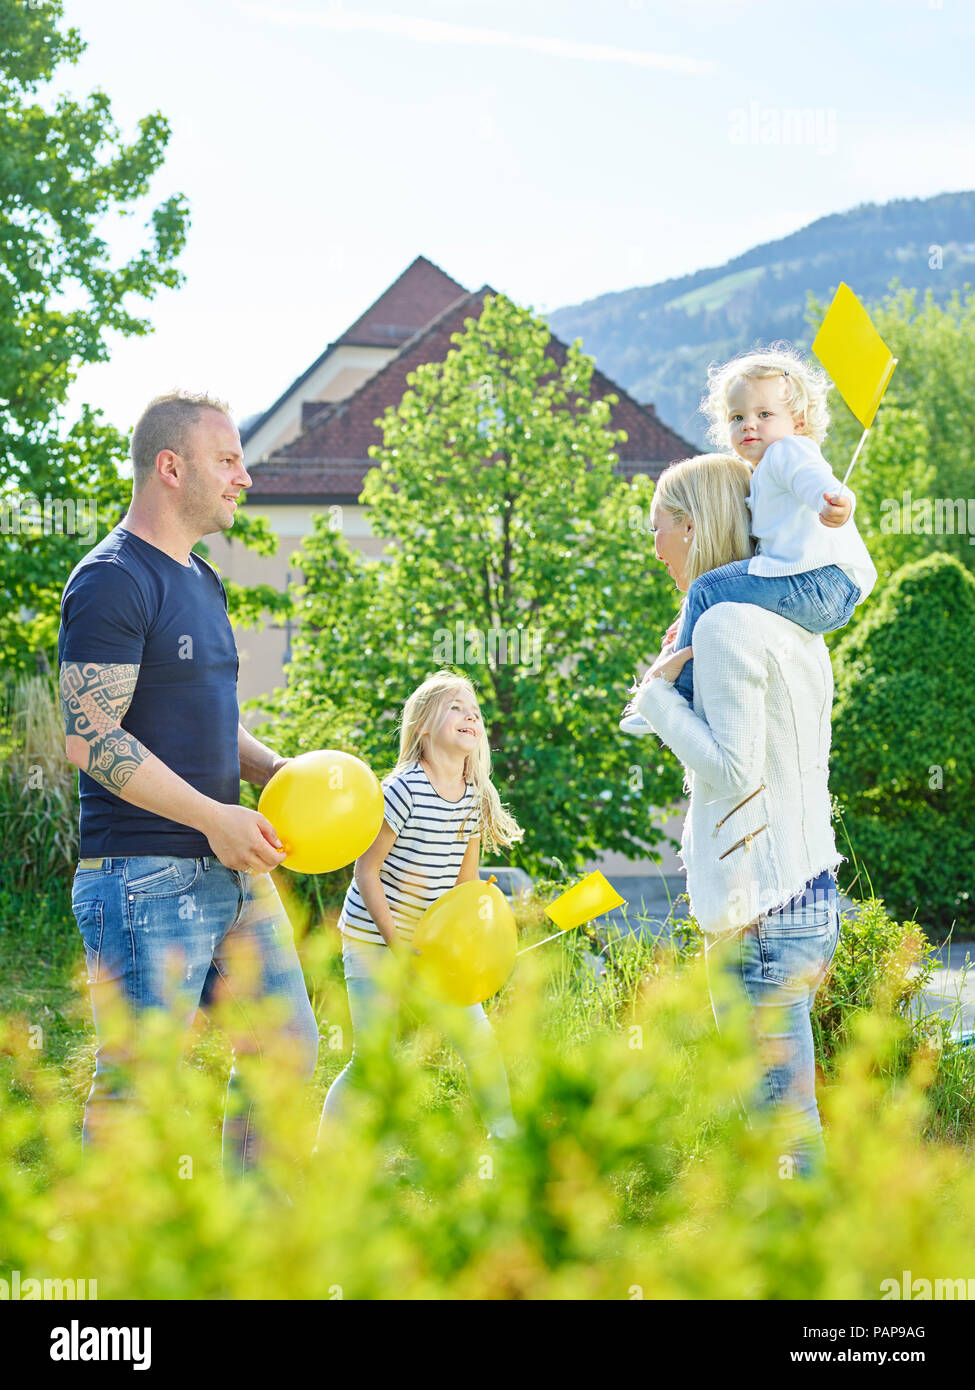 L'Autriche, de Wattens, famille heureuse de jouer ensemble dans un parc Banque D'Images